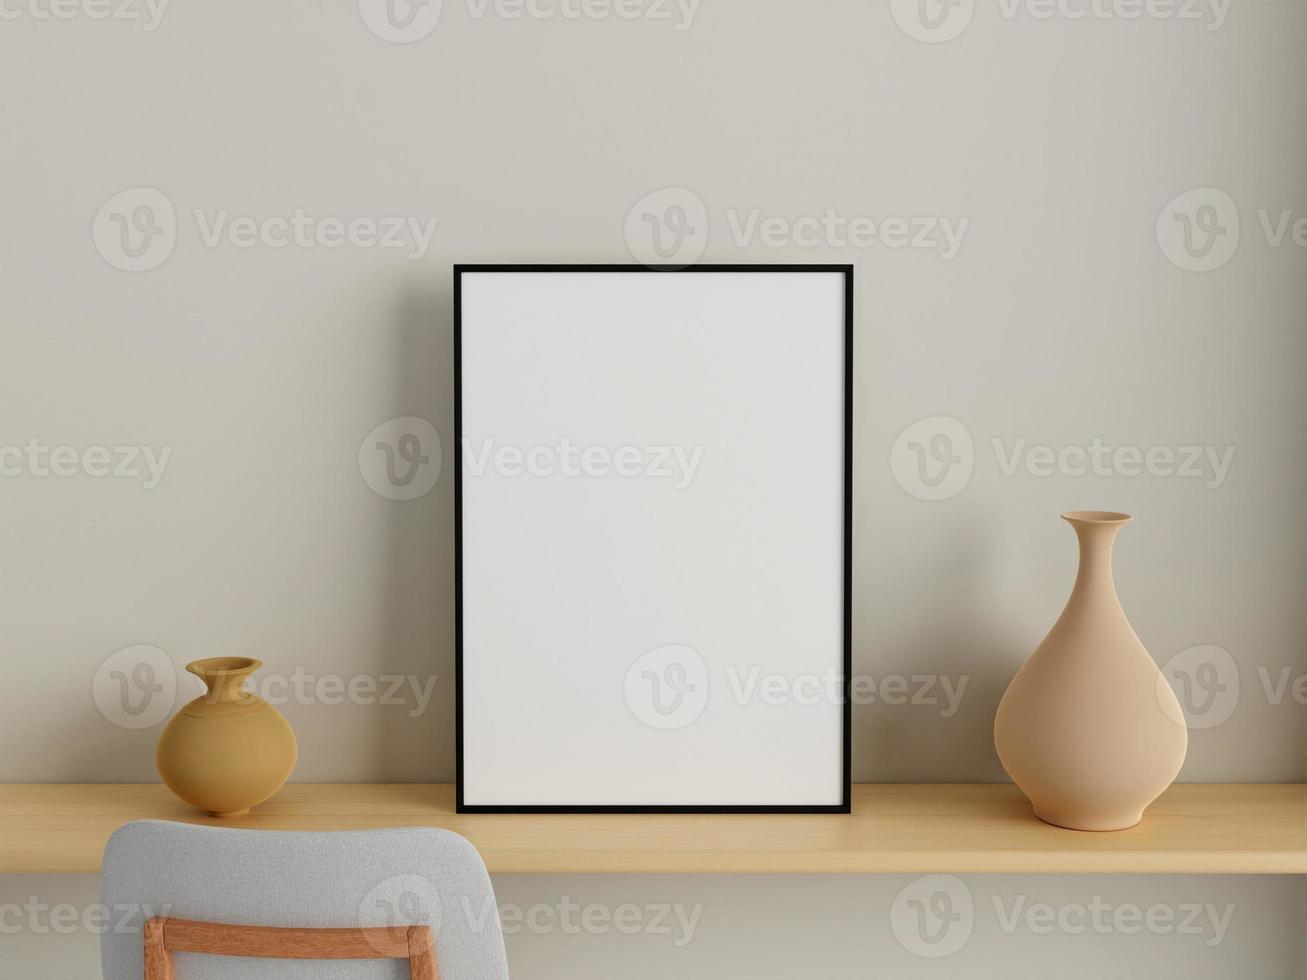 modern och minimalistisk vertikal svart affisch eller fotorammockup på väggen i vardagsrummet. 3d-rendering. foto